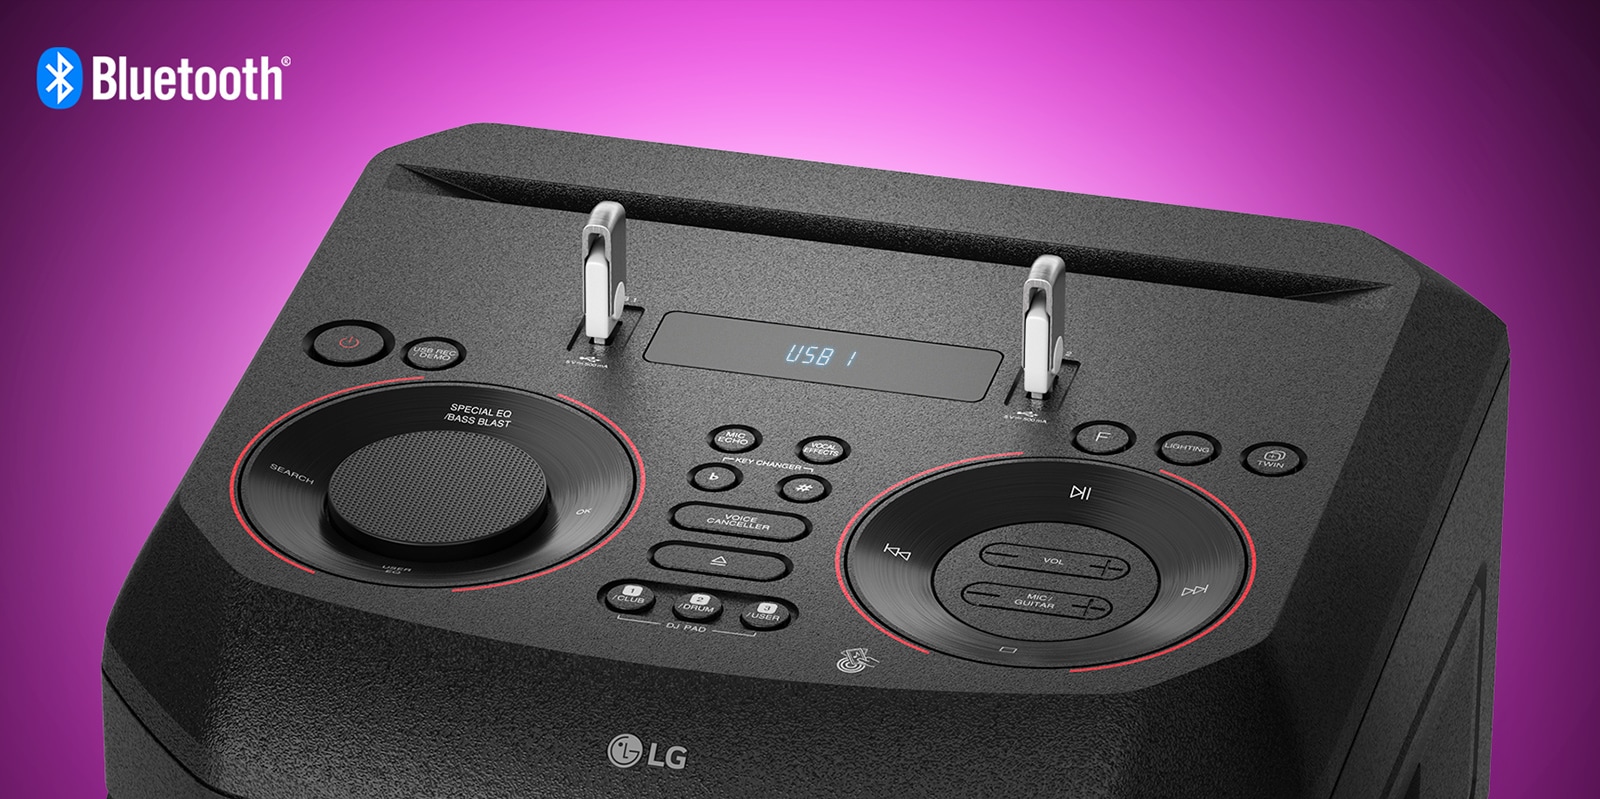 نمای نزدیک از دکمه های کنترل در بالای LG XBOOM با دو USB متصل. لوگوی Bluetooth در گوشه سمت چپ و بالا نشان داده شده است.